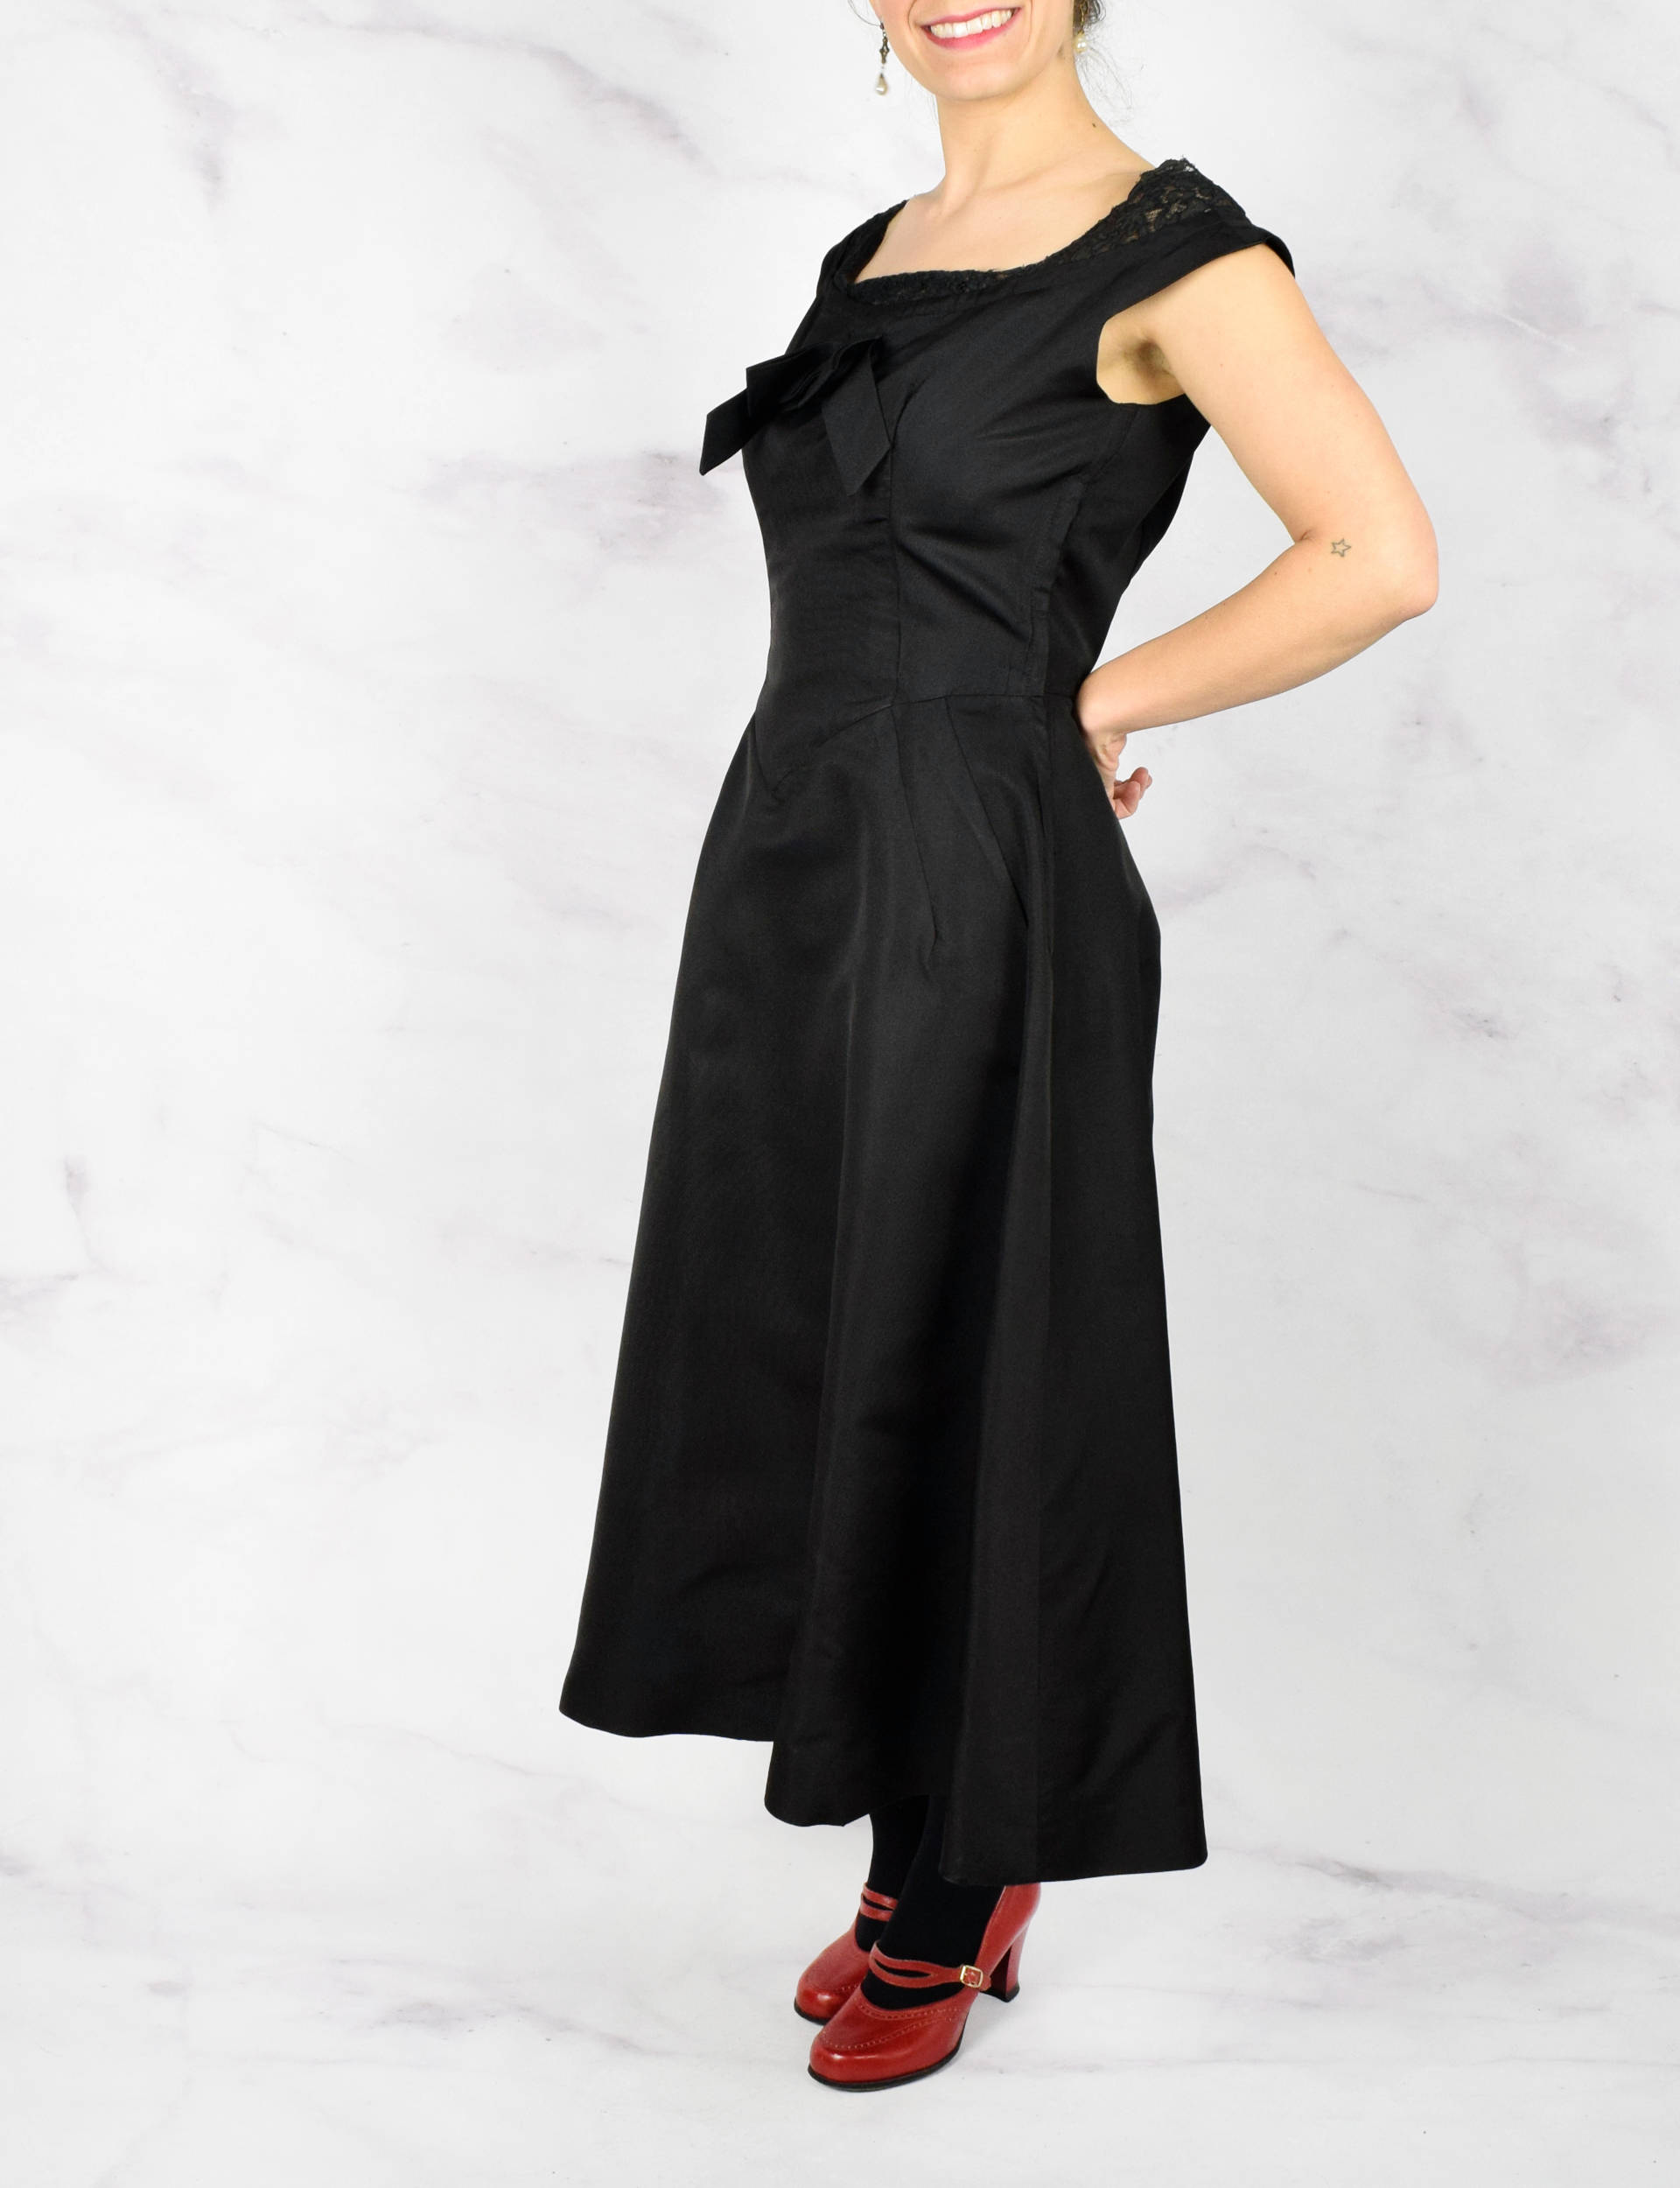 1950s Black Silk Herbert Schneider Dress Gown Size Medium | Etsy